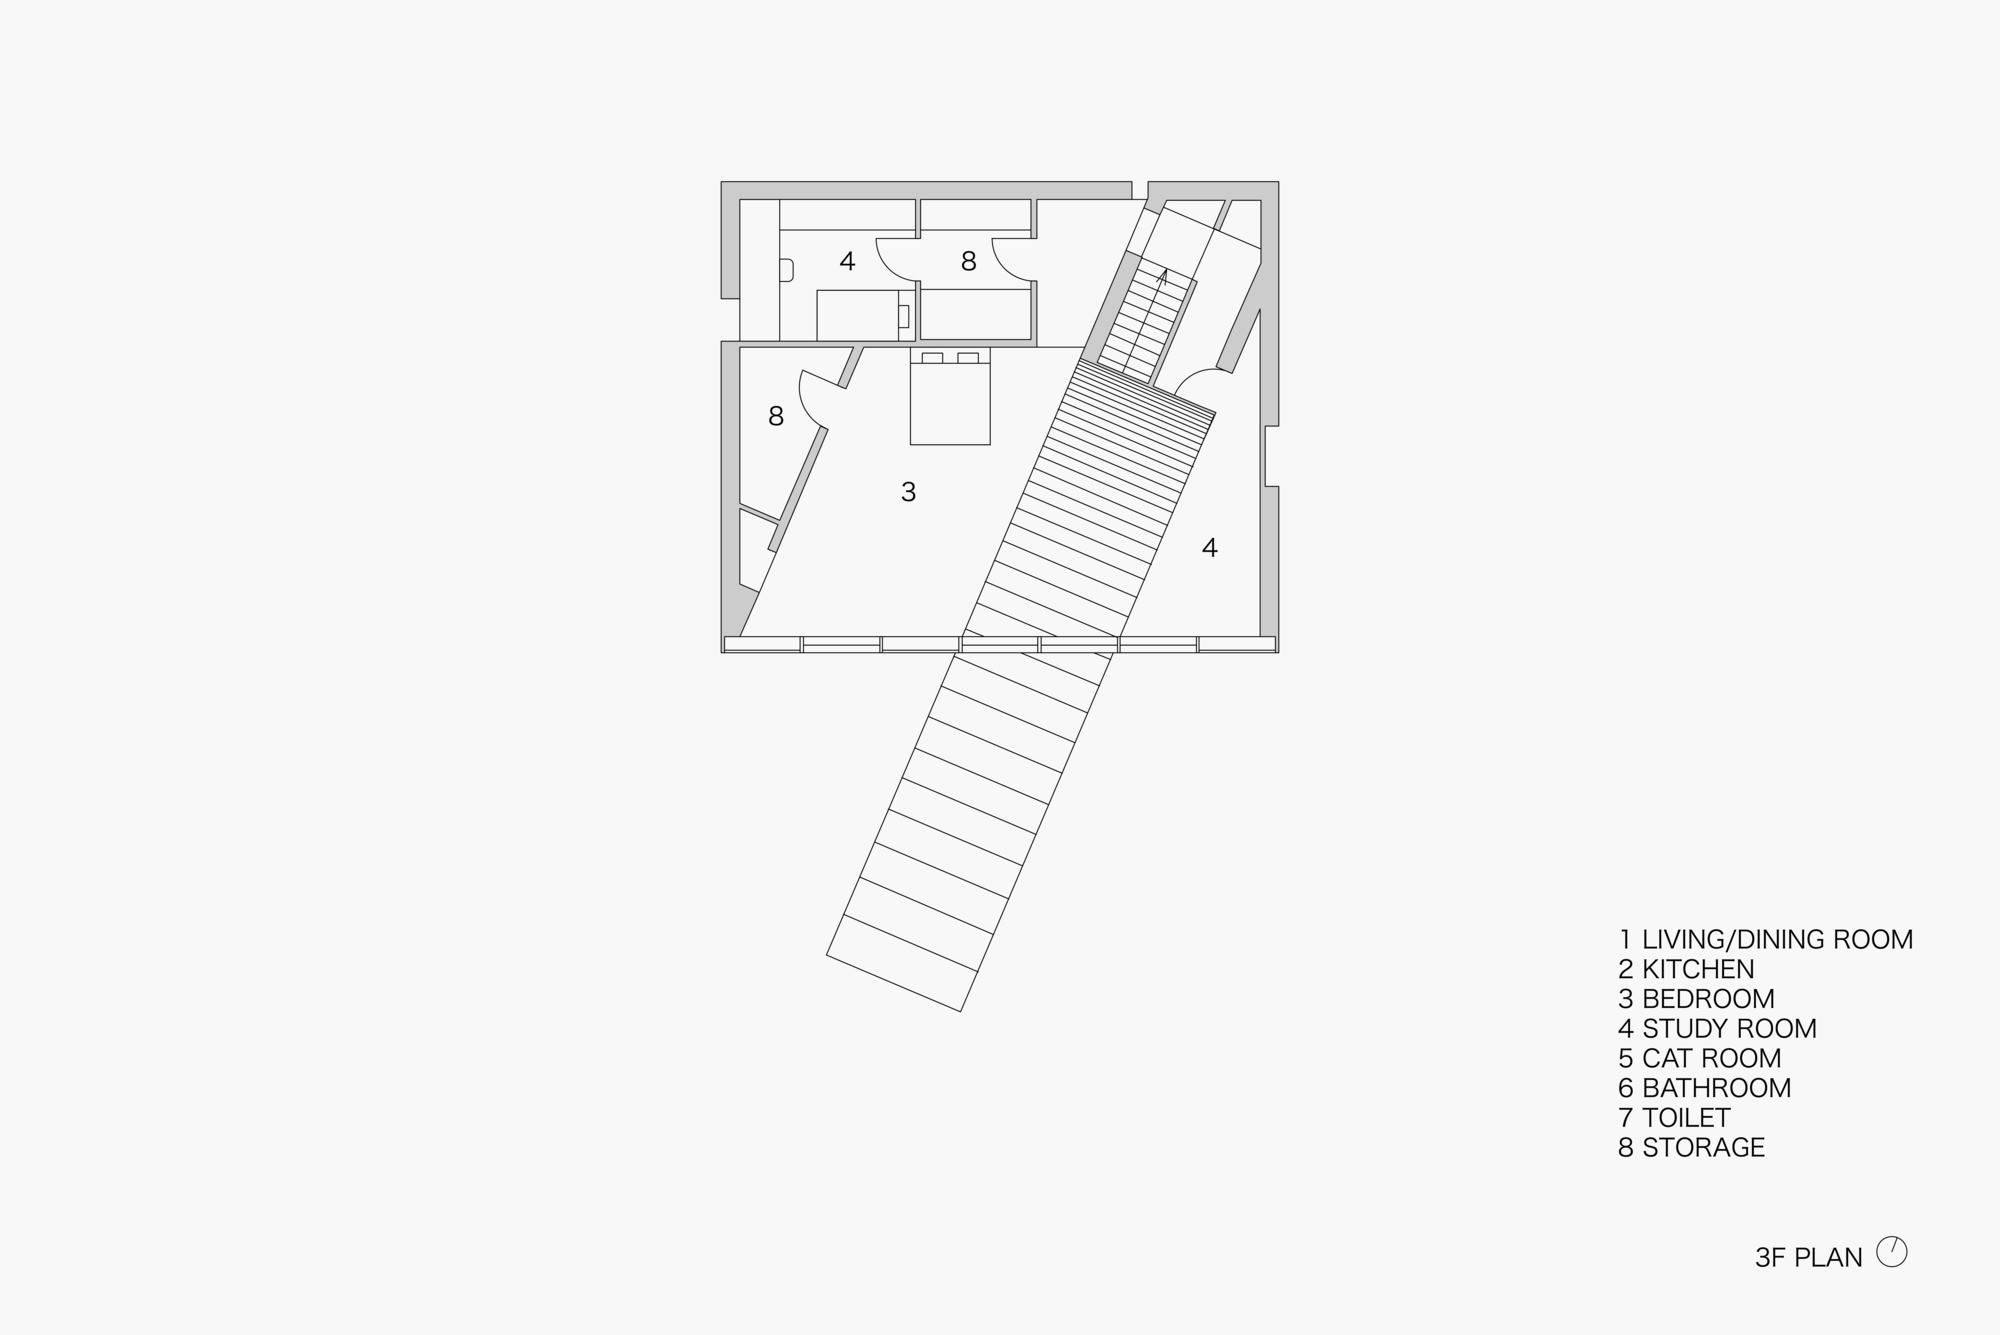 62_04_stairwayhouse_3Fplan.jpg